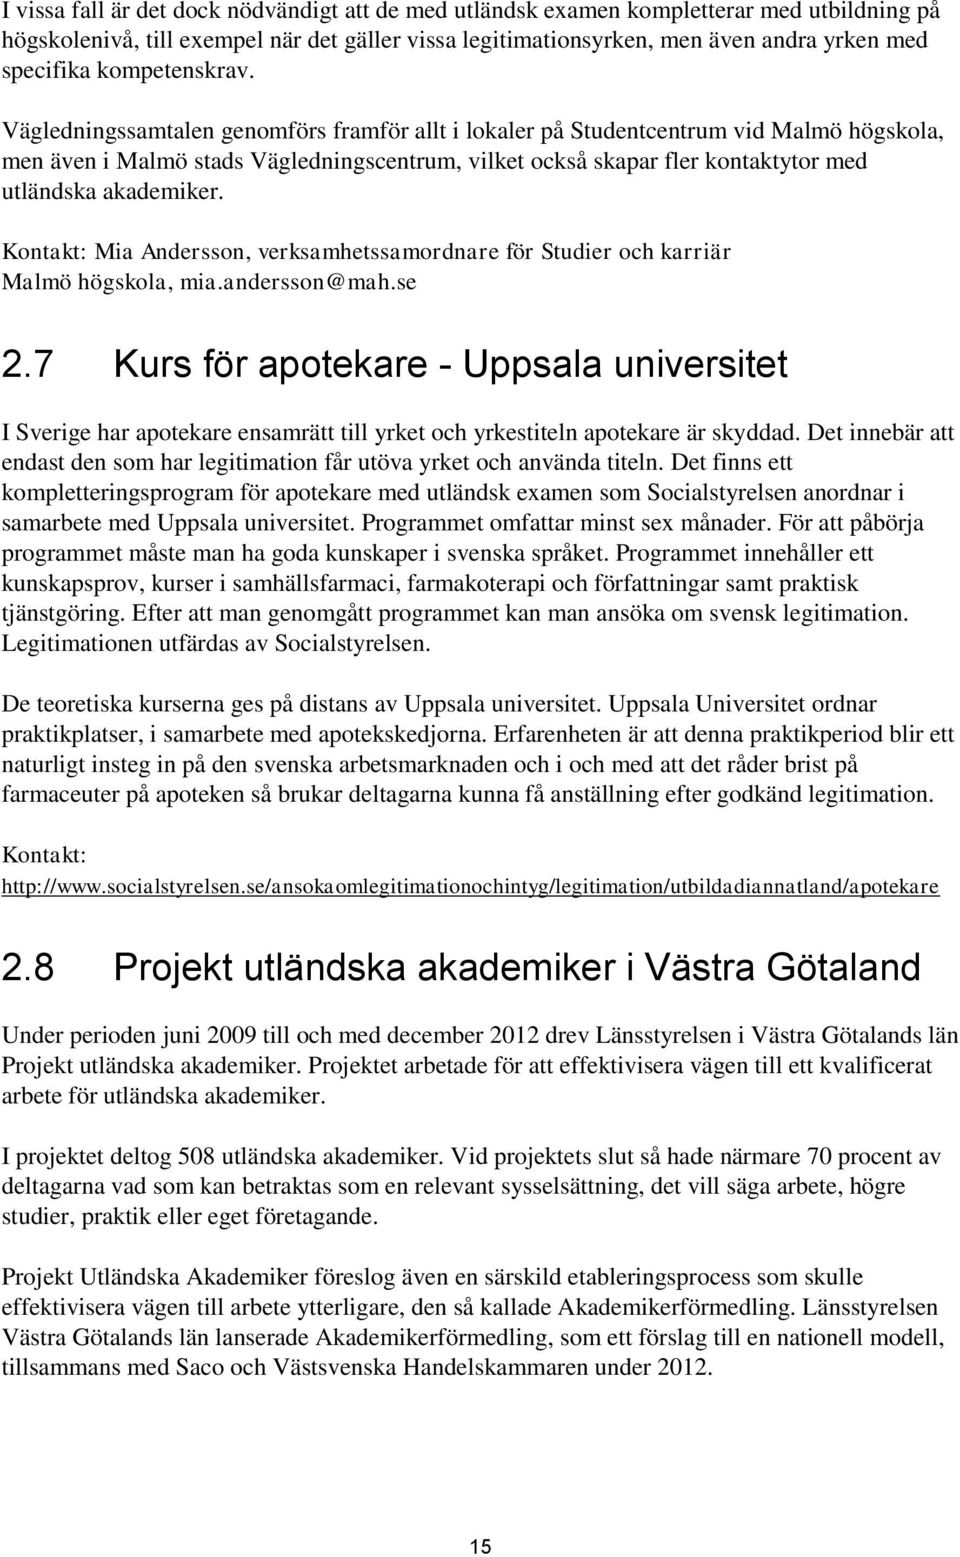 Vägledningssamtalen genomförs framför allt i lokaler på Studentcentrum vid Malmö högskola, men även i Malmö stads Vägledningscentrum, vilket också skapar fler kontaktytor med utländska akademiker.